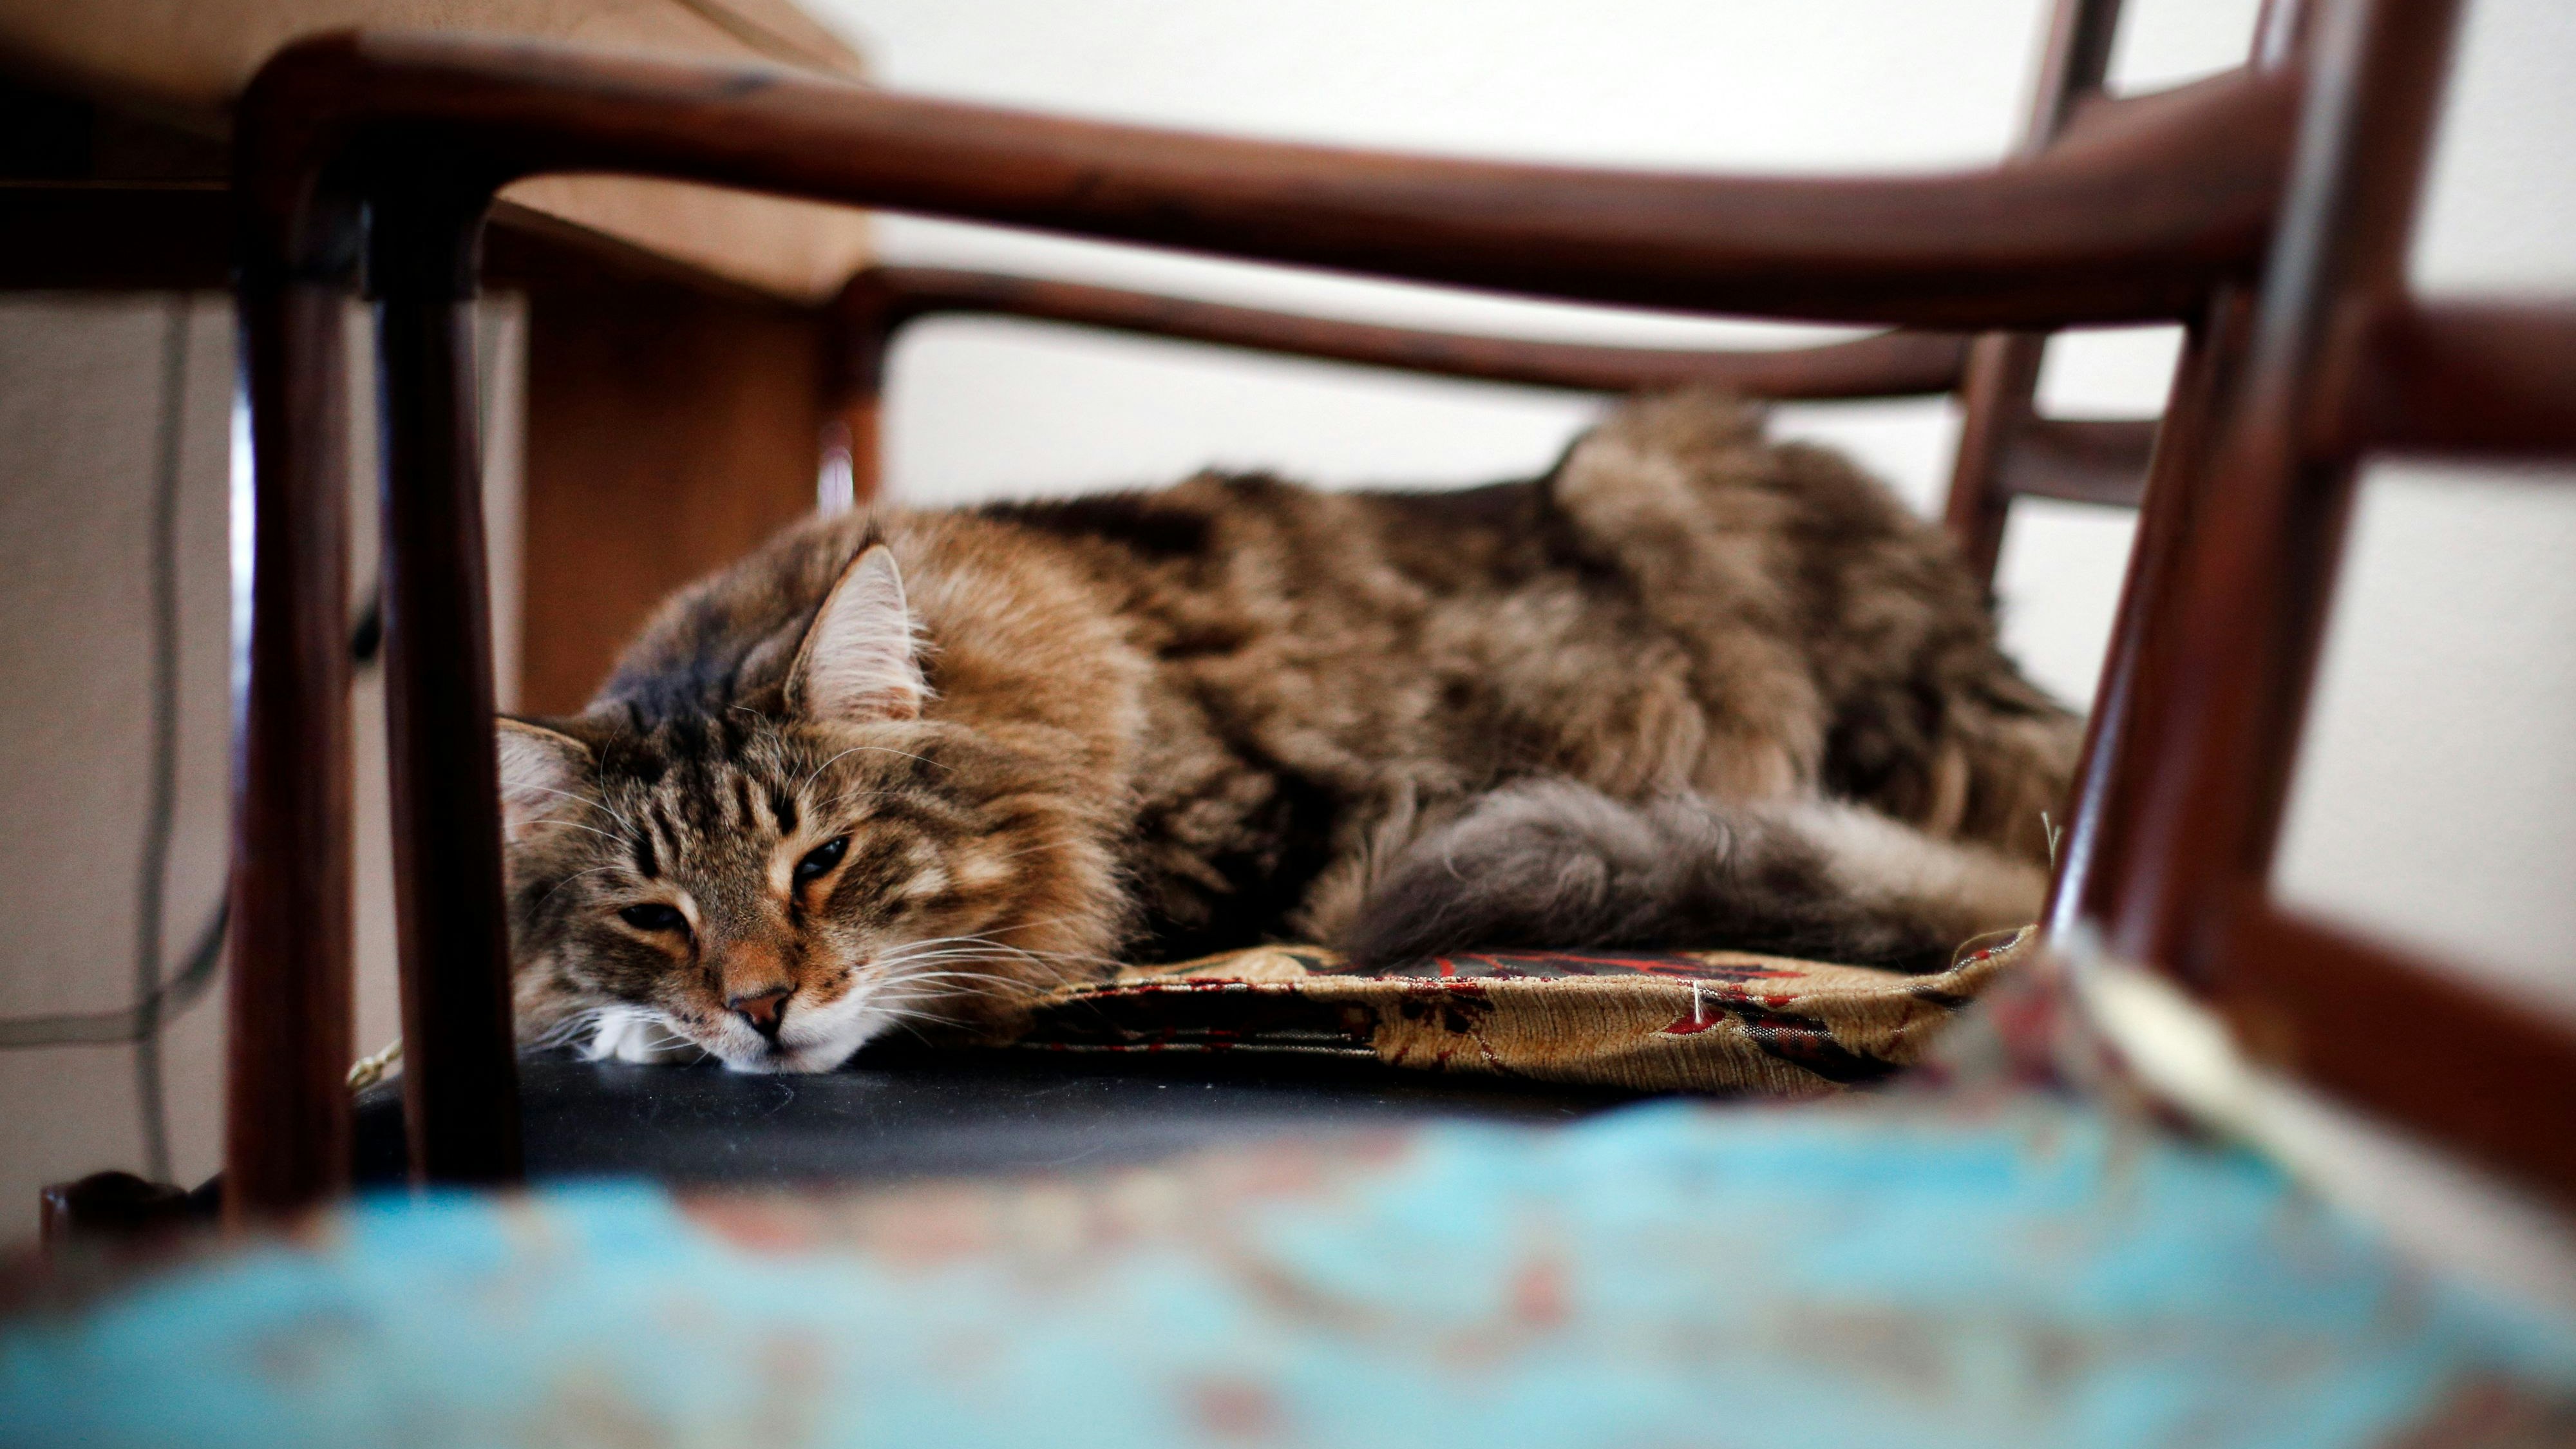 Katzensenioren sollten einen ruhigen, weichen und warmen Platz haben, an dem sie schlafen und an den sie sich zurückziehen können. Foto: dpa/Fassbender